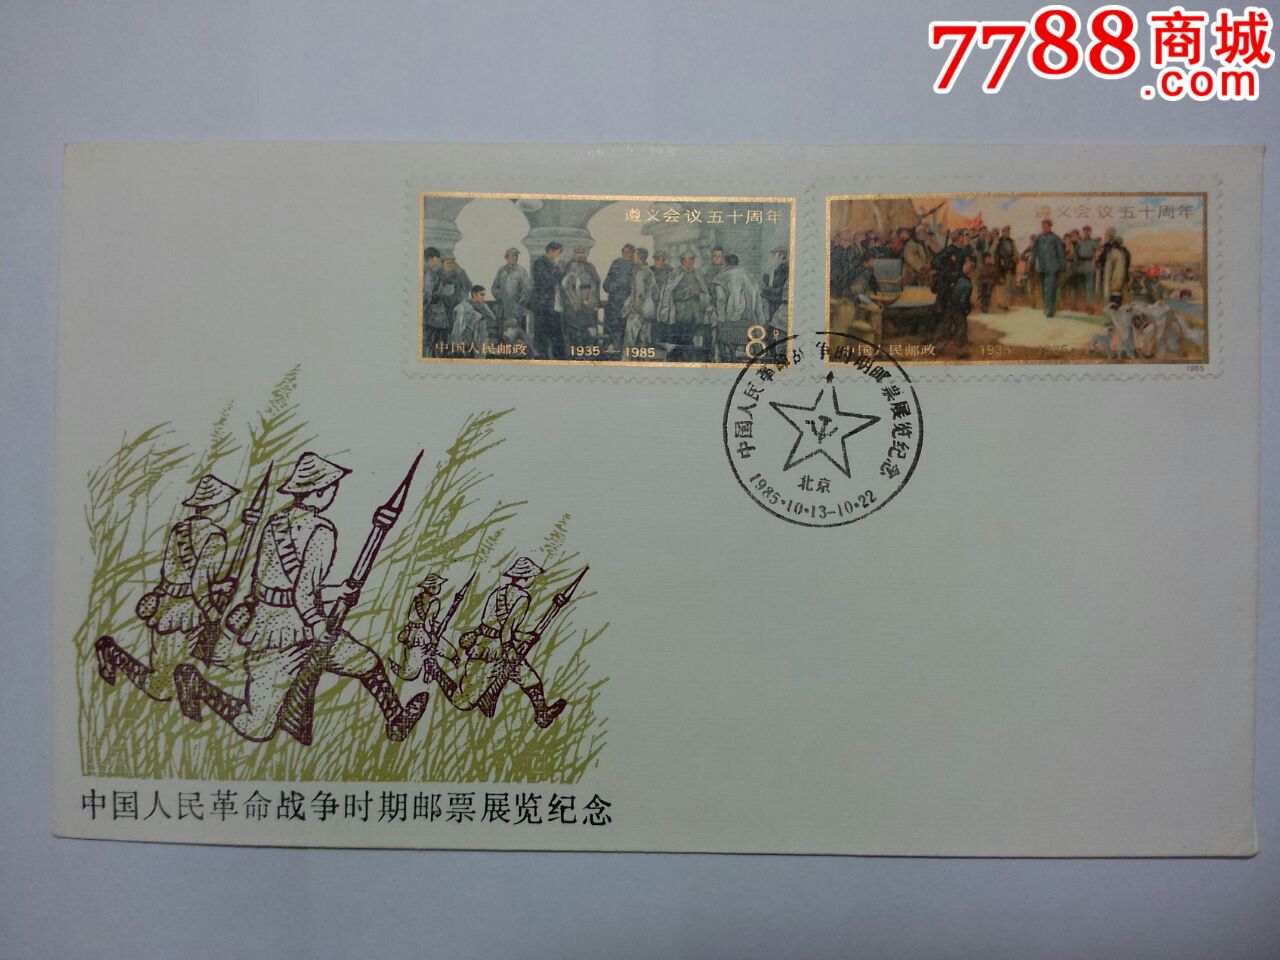 PFN-10中国人民革命战争时期邮票展览-价格:1